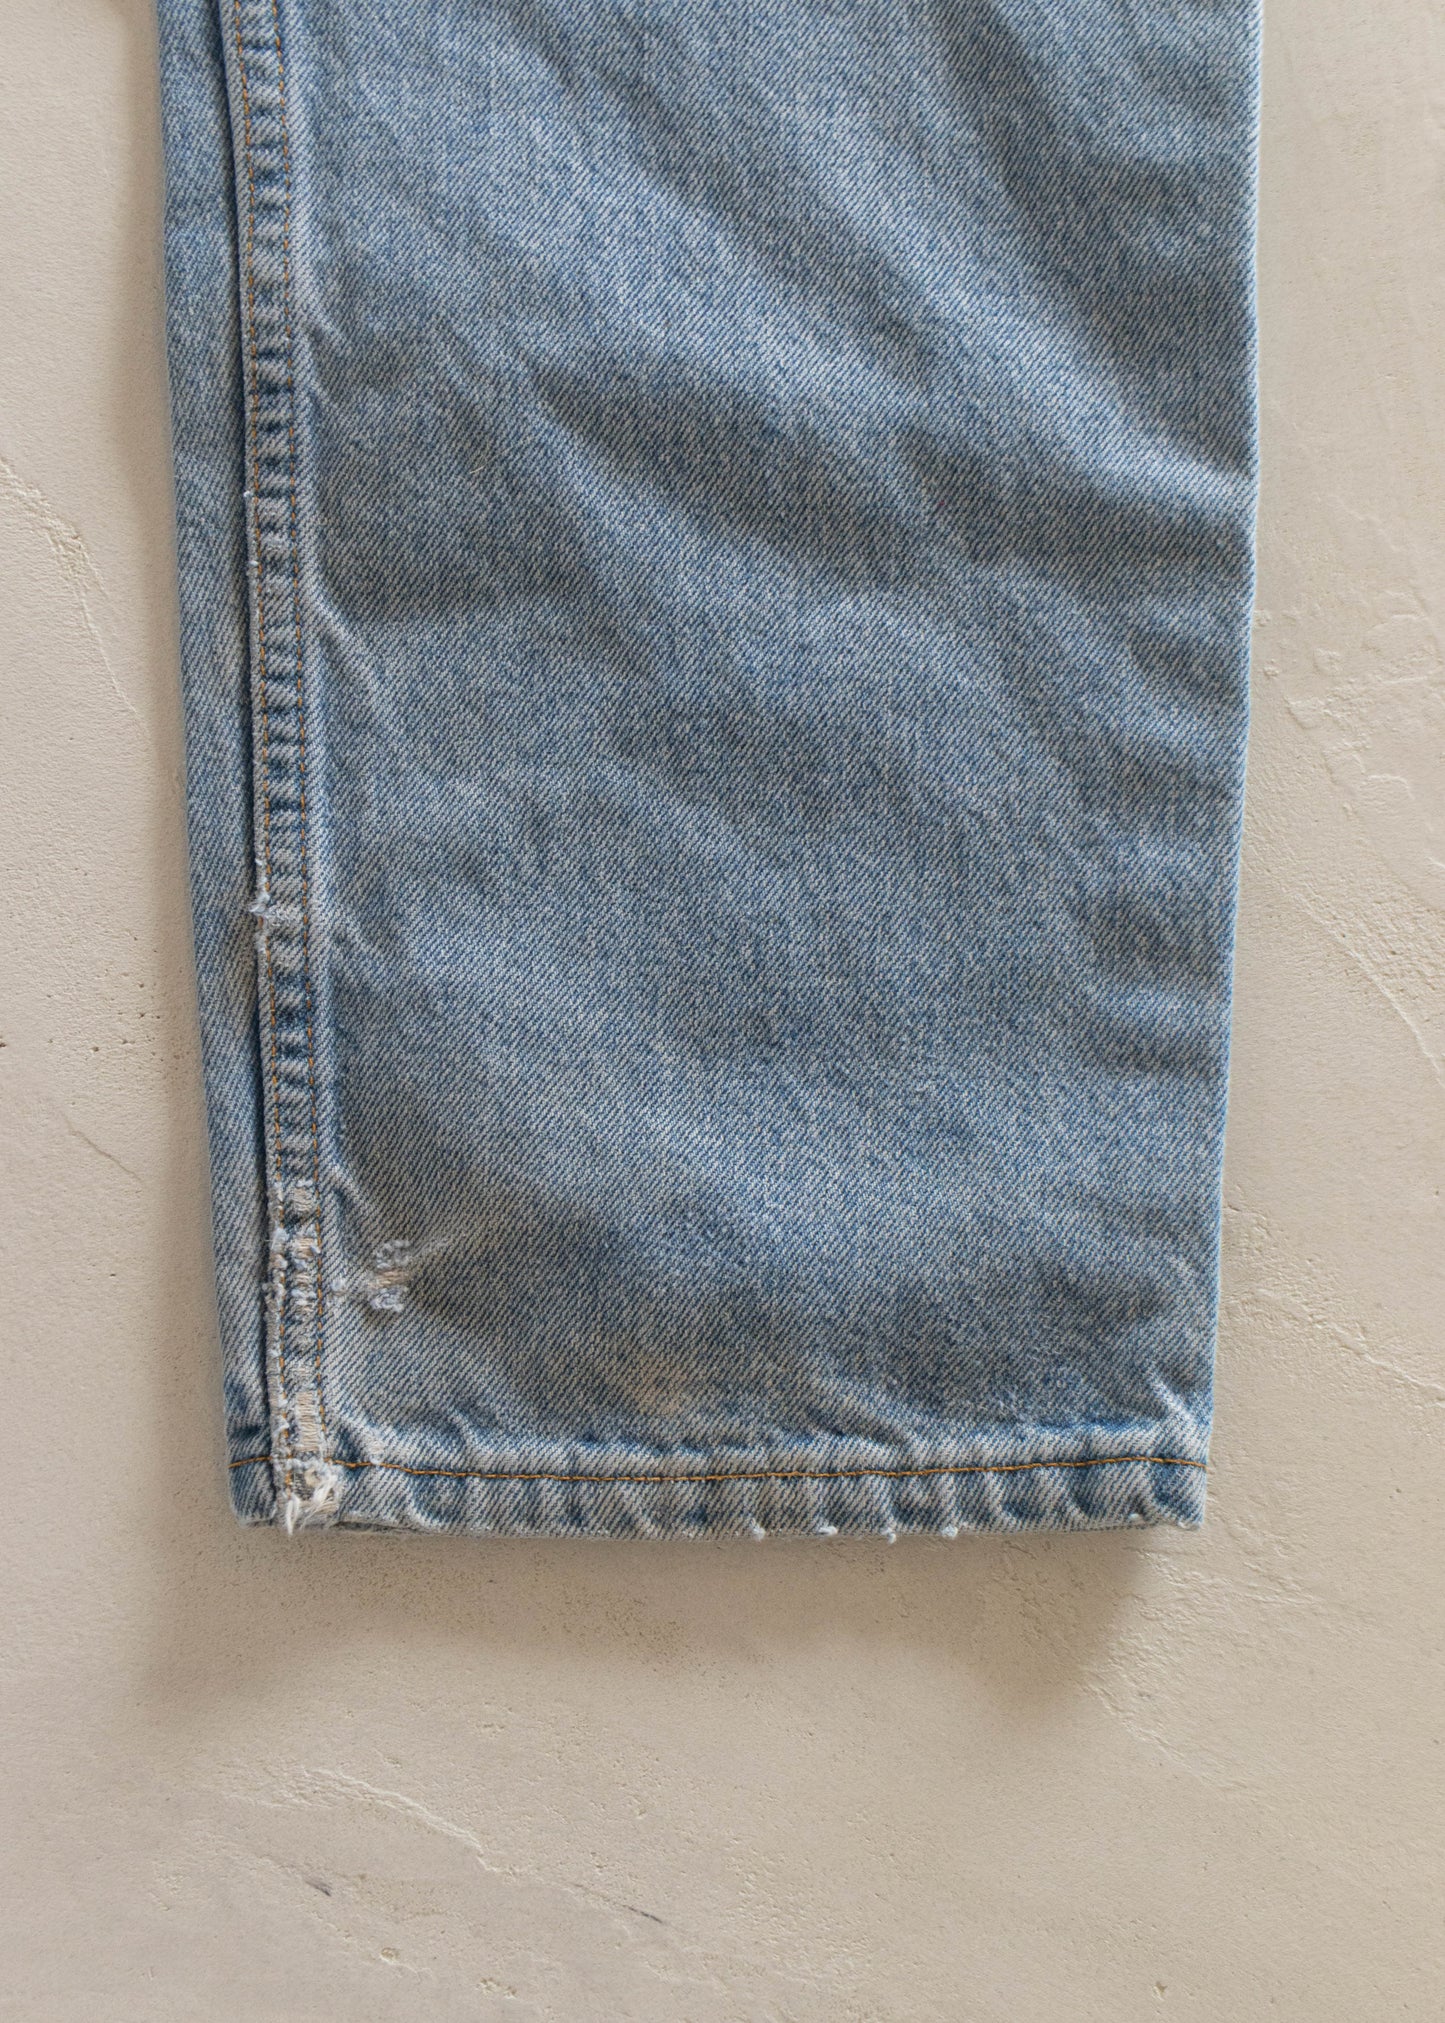 1980s Levi's 550 Lightwash Jeans Size Women's 29 Men's 32